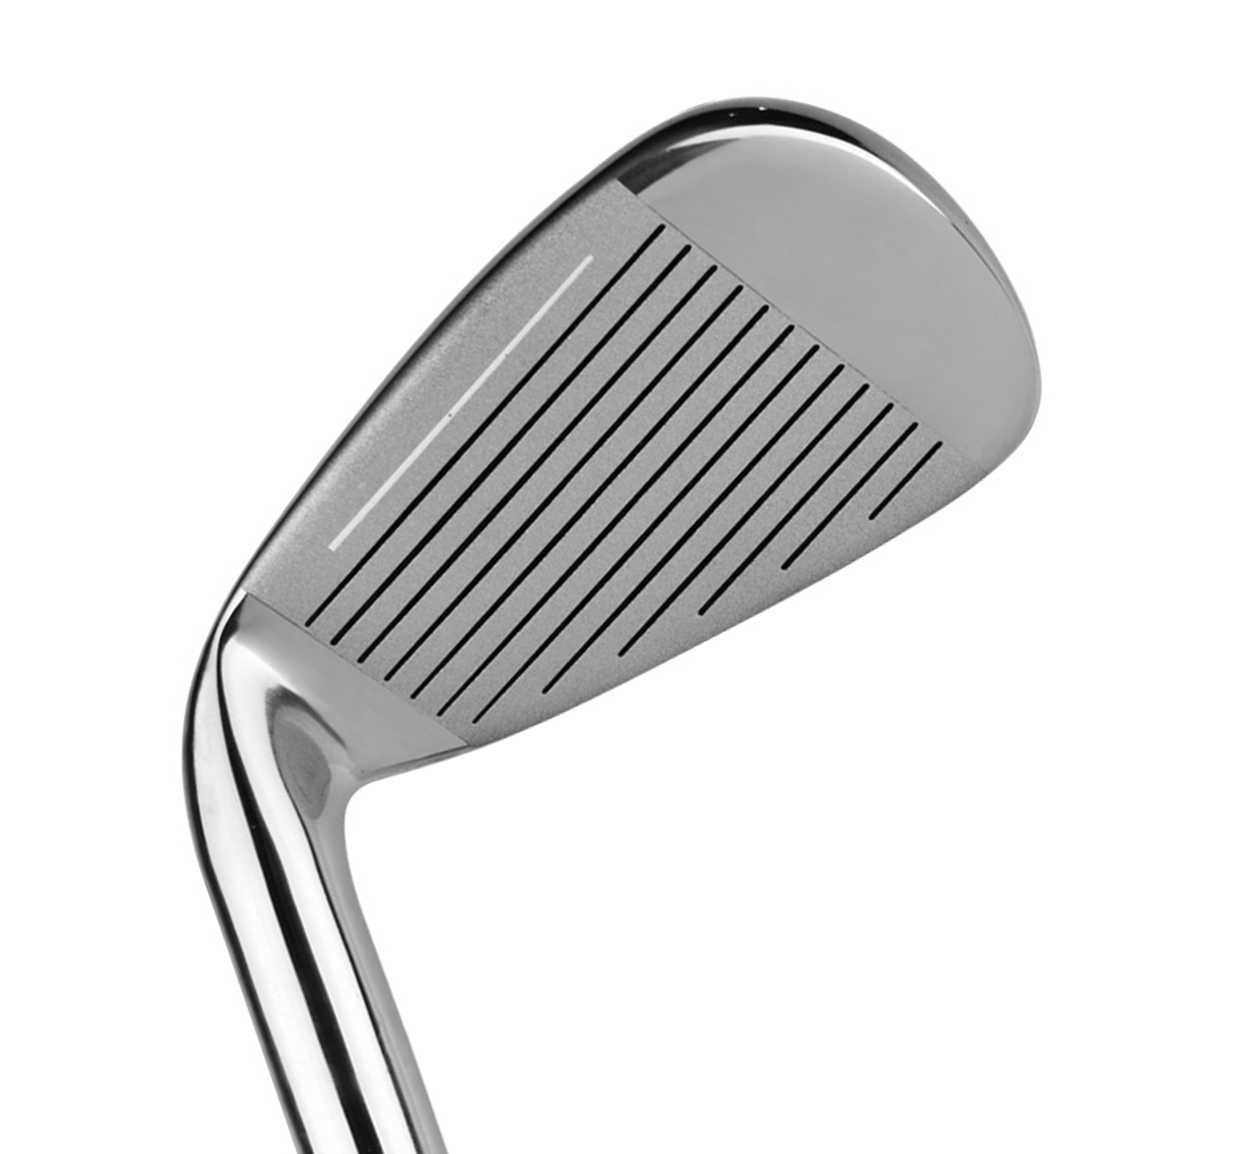 Posma GCP01D高品質不銹鋼桿身高爾夫推桿, 7號桿,雙層比賽球3合1套裝,附送Posma輕便高爾夫球桿包